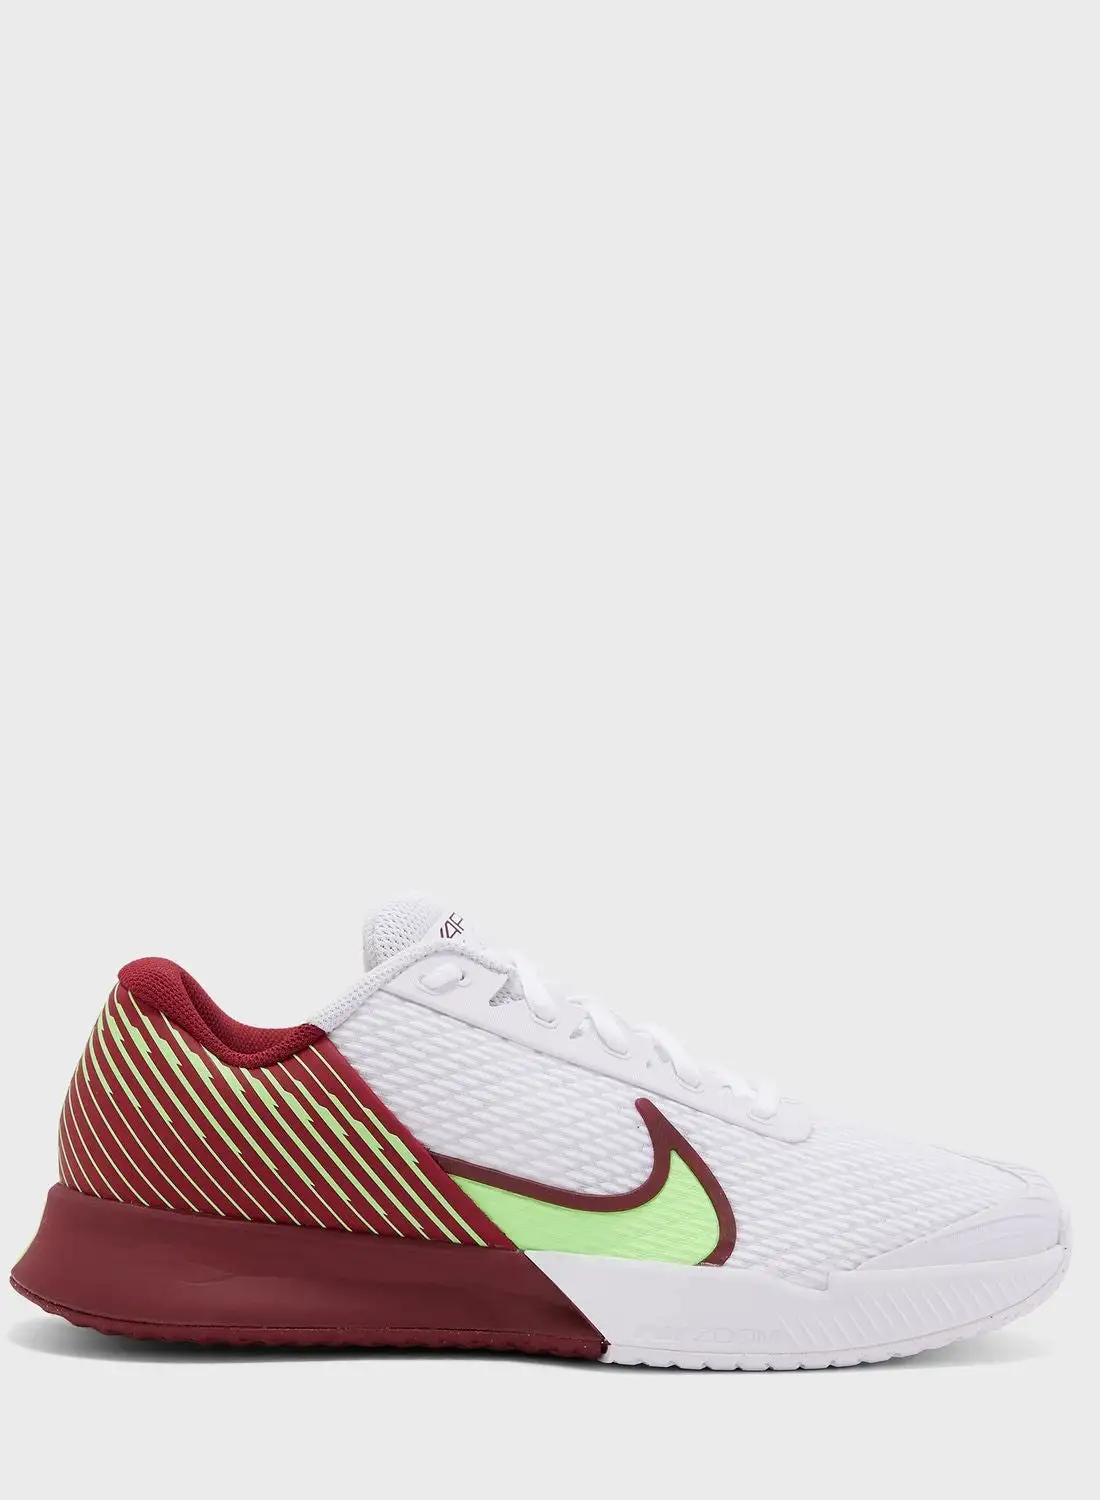 Nike Zoom Vapor Pro 2 Hc Shoes